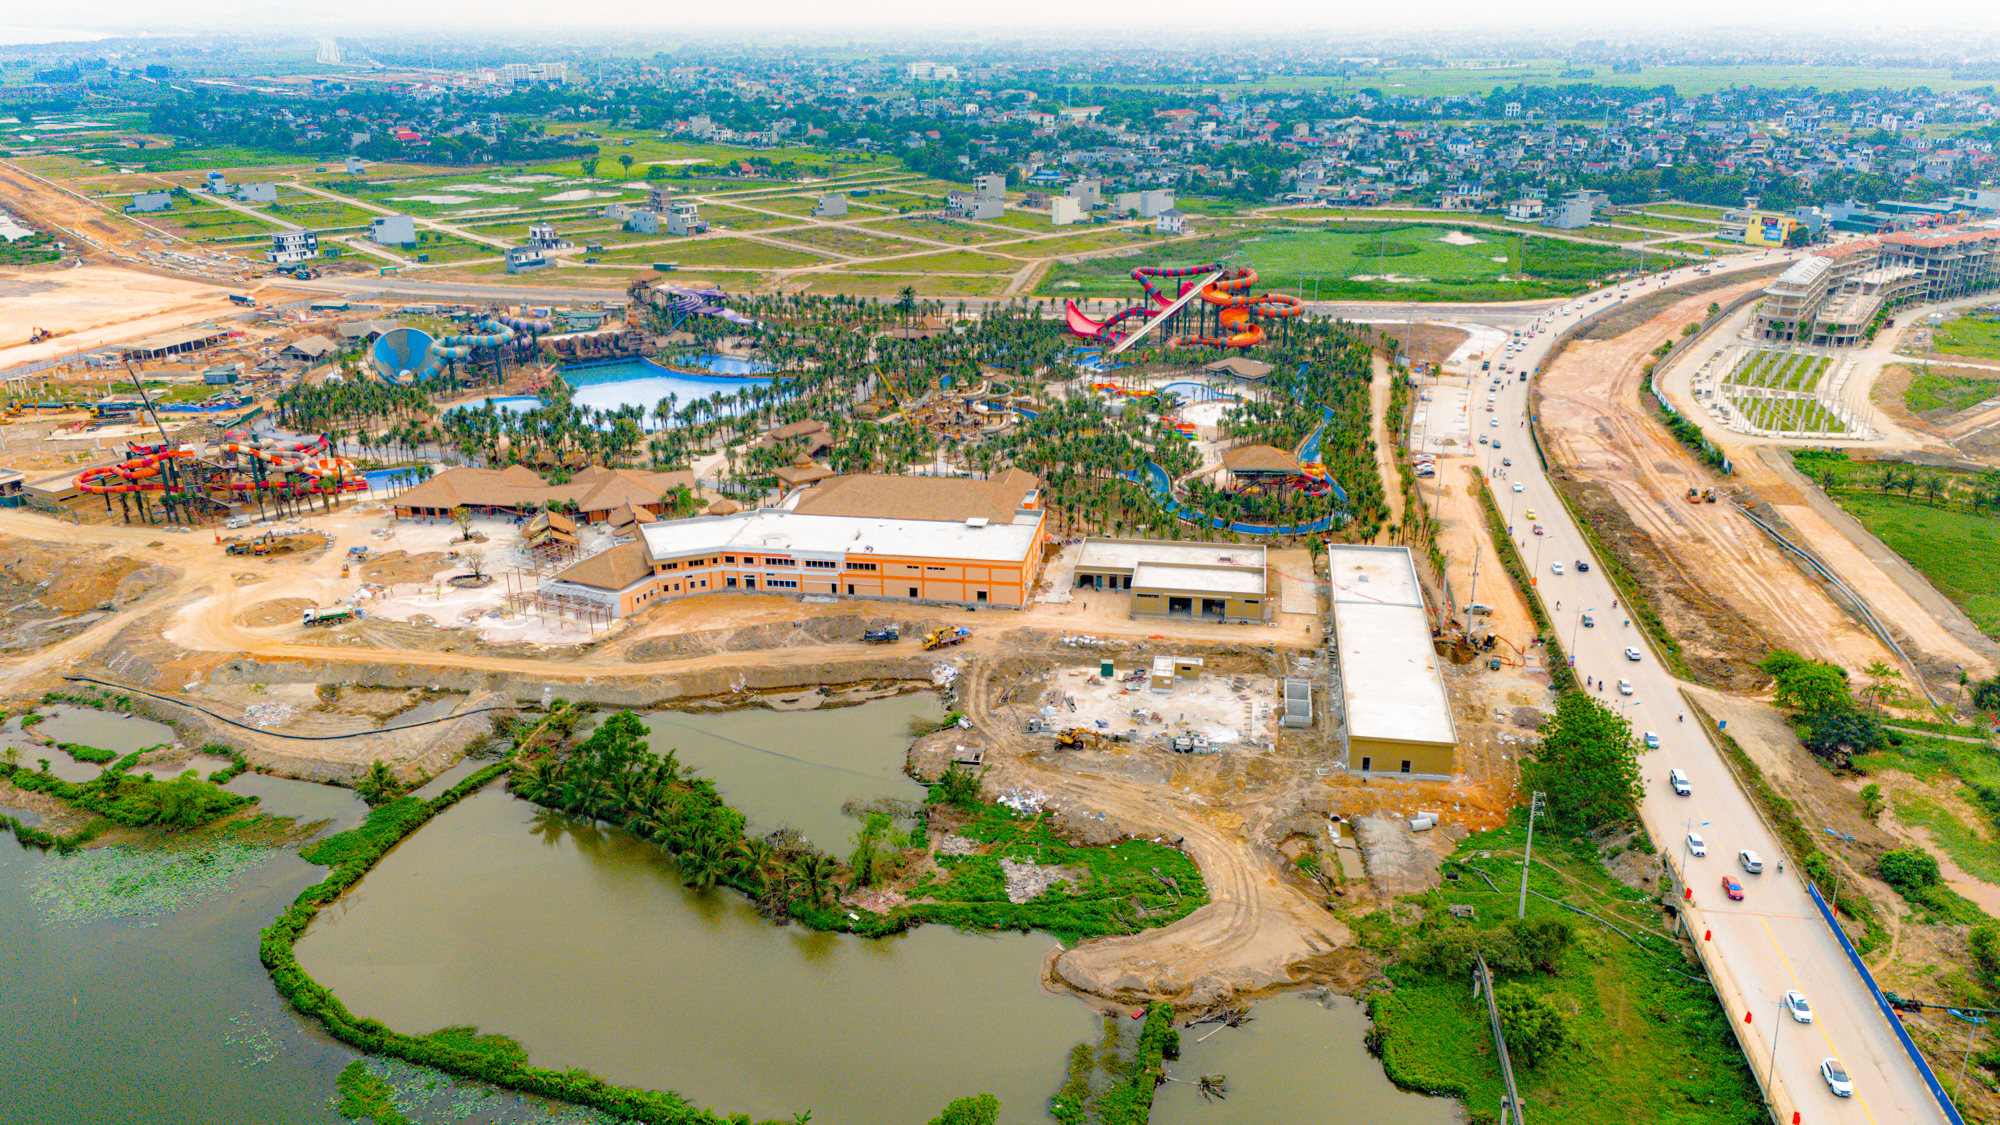 Toàn cảnh siêu dự án một tỷ USD của Sun Group tại thành phố nhỏ nhất Việt Nam: Công viên nước lớn bậc nhất miền Bắc, quảng trường biển sức chứa 10.000 người- Ảnh 9.